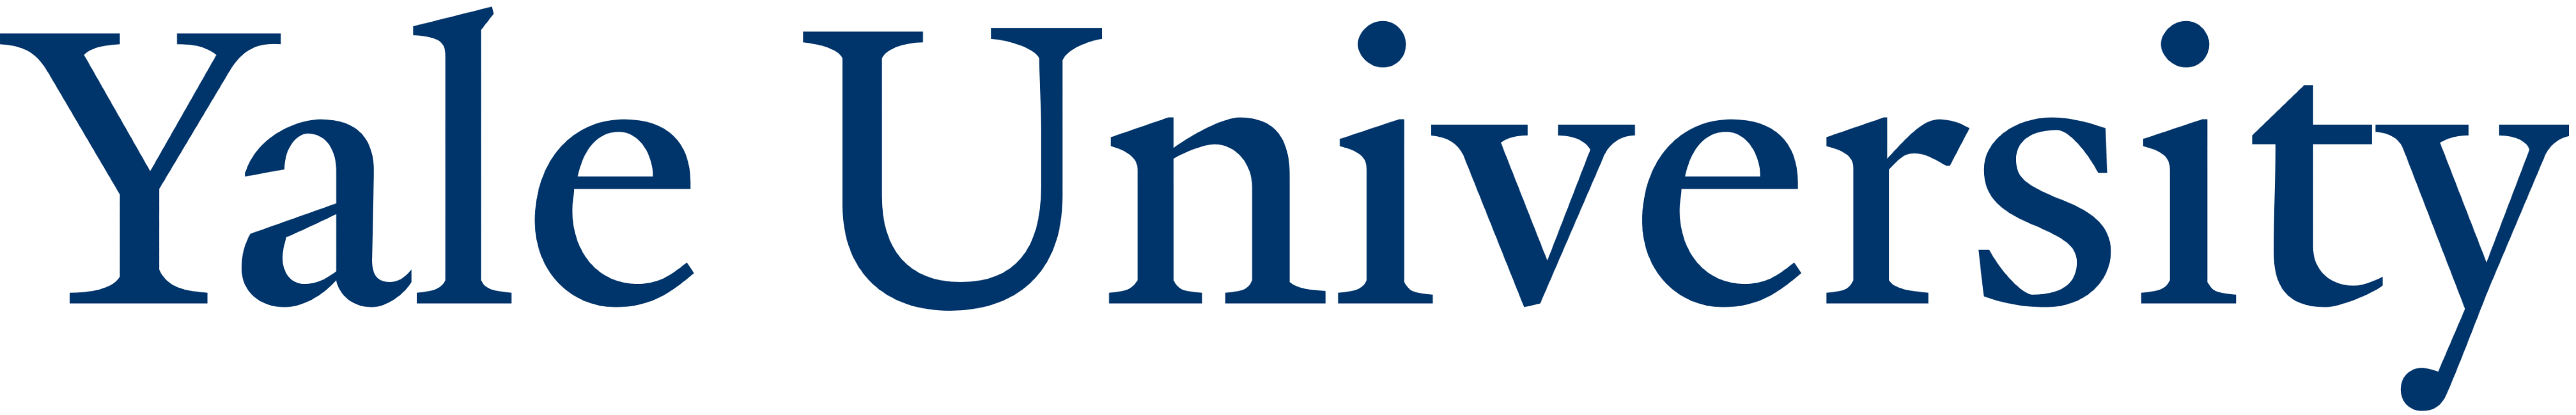 MD-Education-Yale_University_logo_logotype